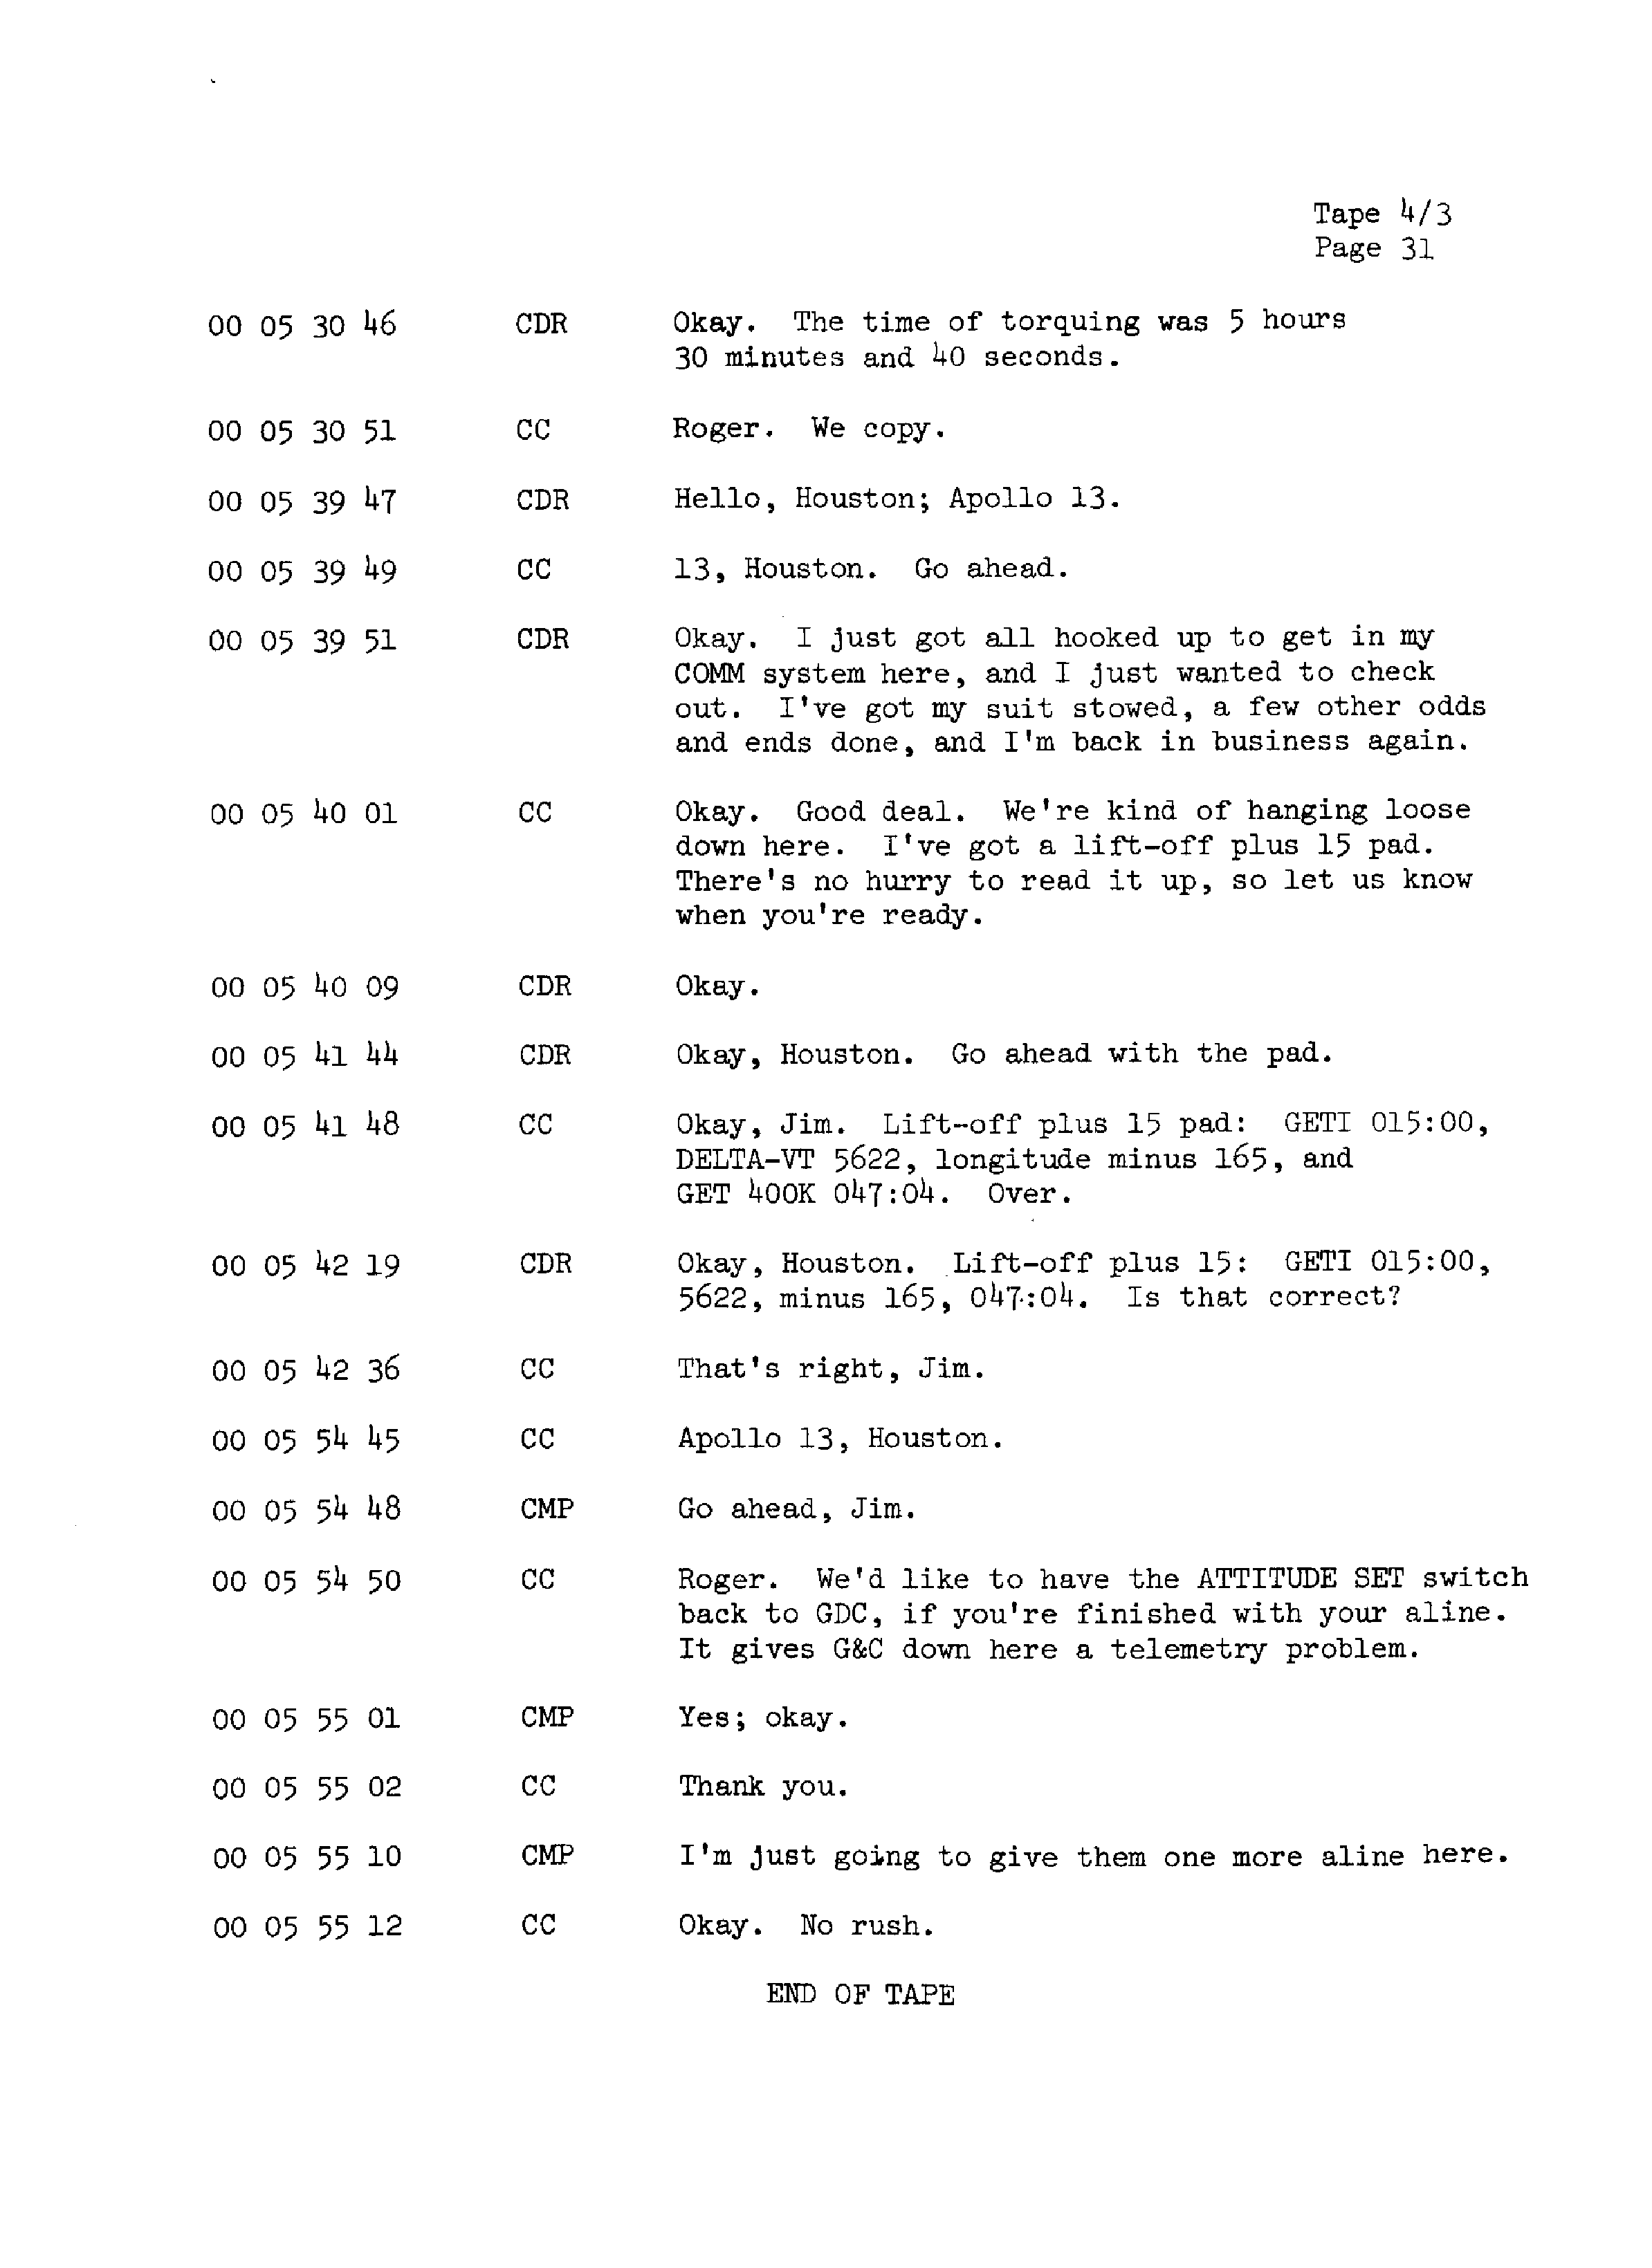 Page 38 of Apollo 13’s original transcript